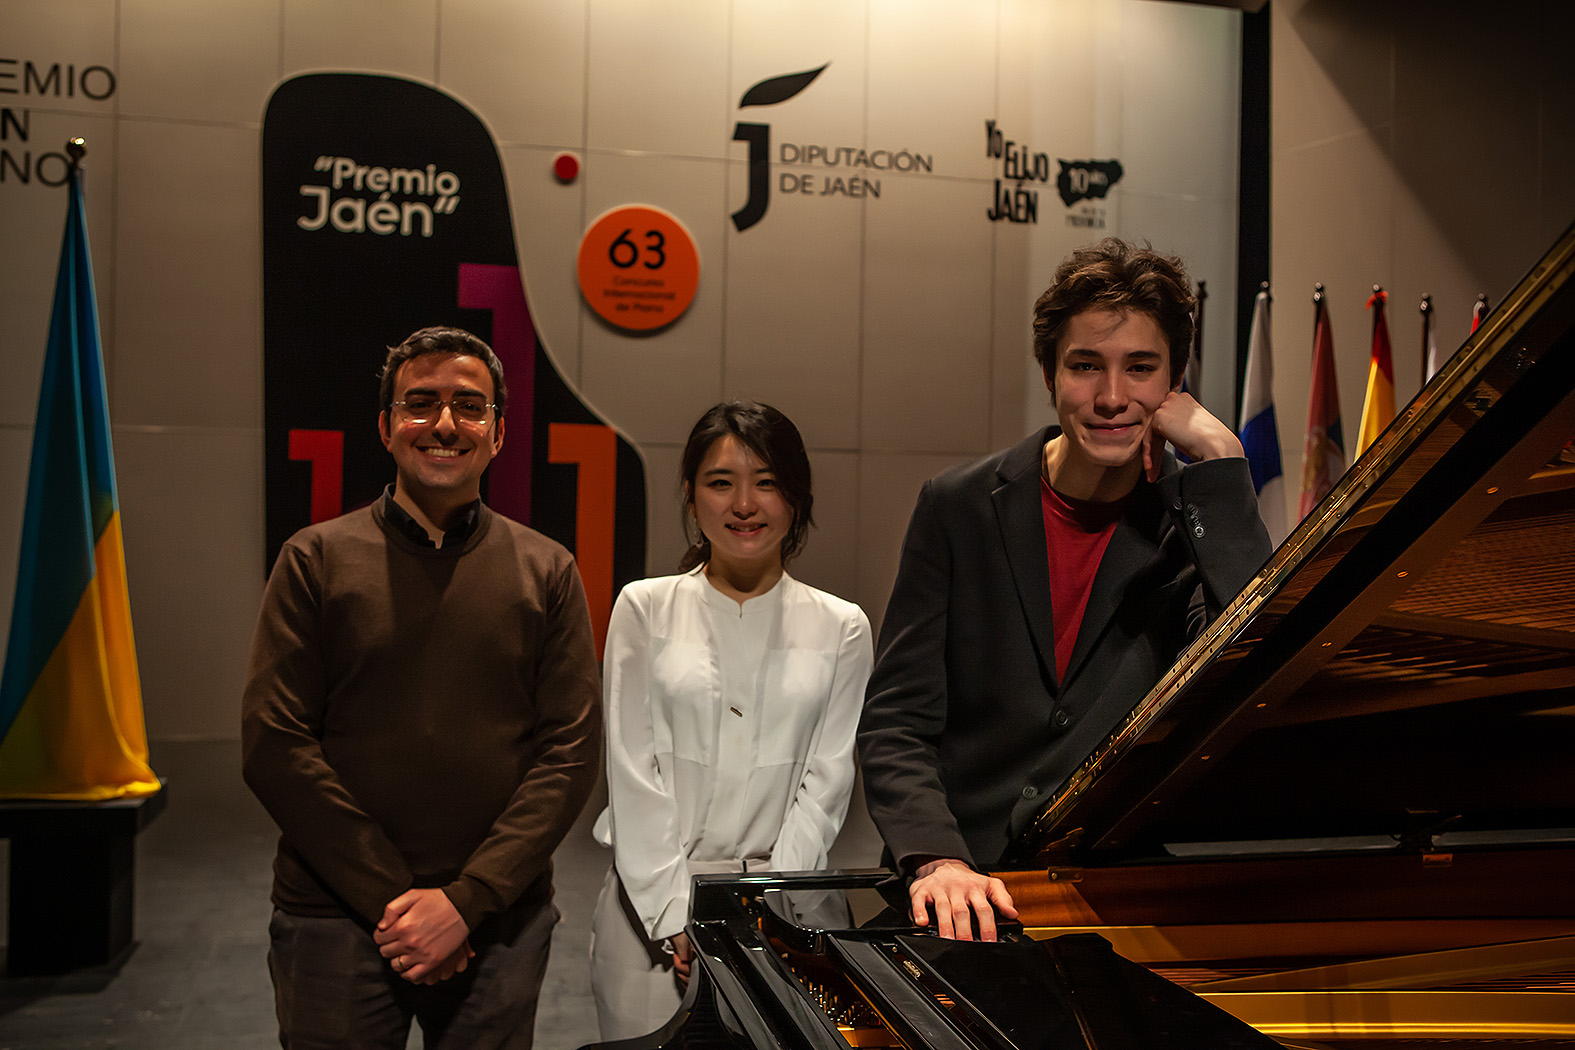 Foto de la noticia: Un estadounidense, un italiano y una coreana se disputarán el 63º Premio “Jaén” de Piano de Diputación